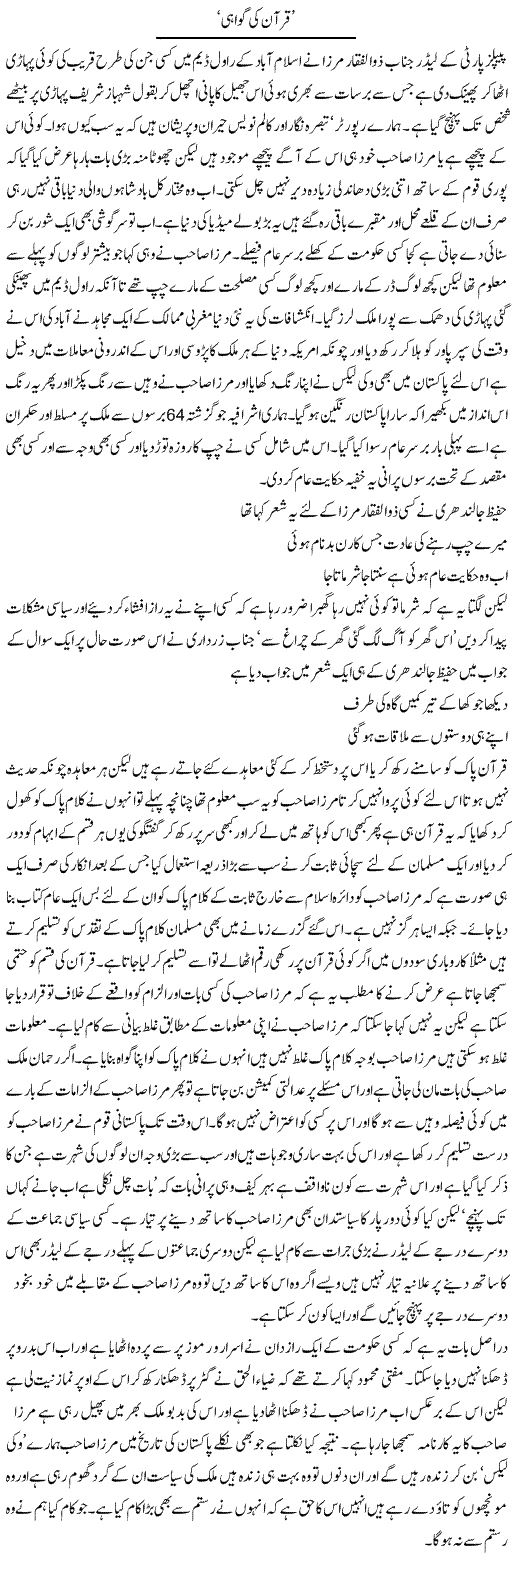 Quran and Zulfiqar Mirza Express Column Abdul Qadir 6 September 2011